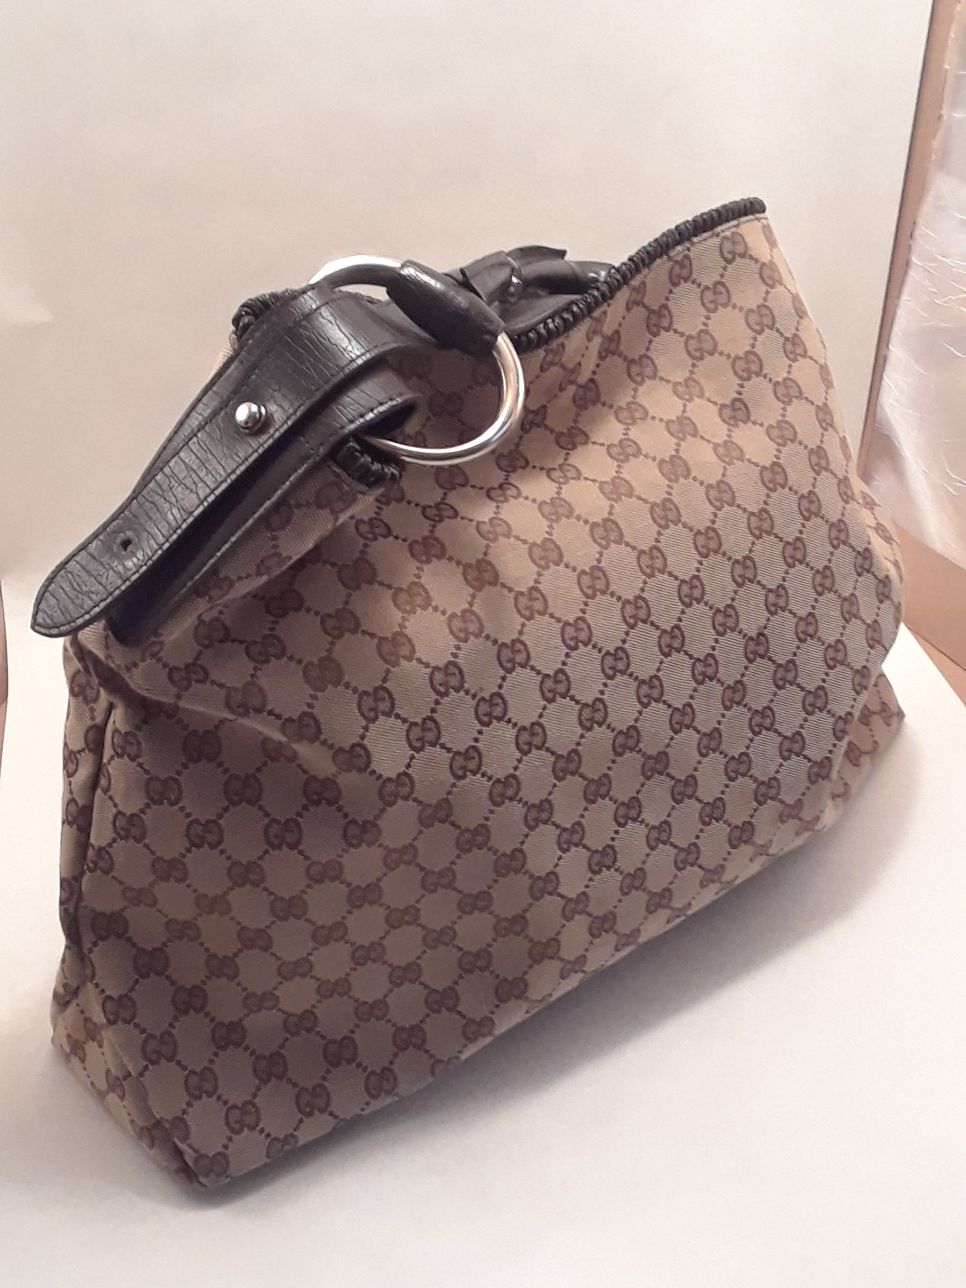 XL Gucci Hobo Bag